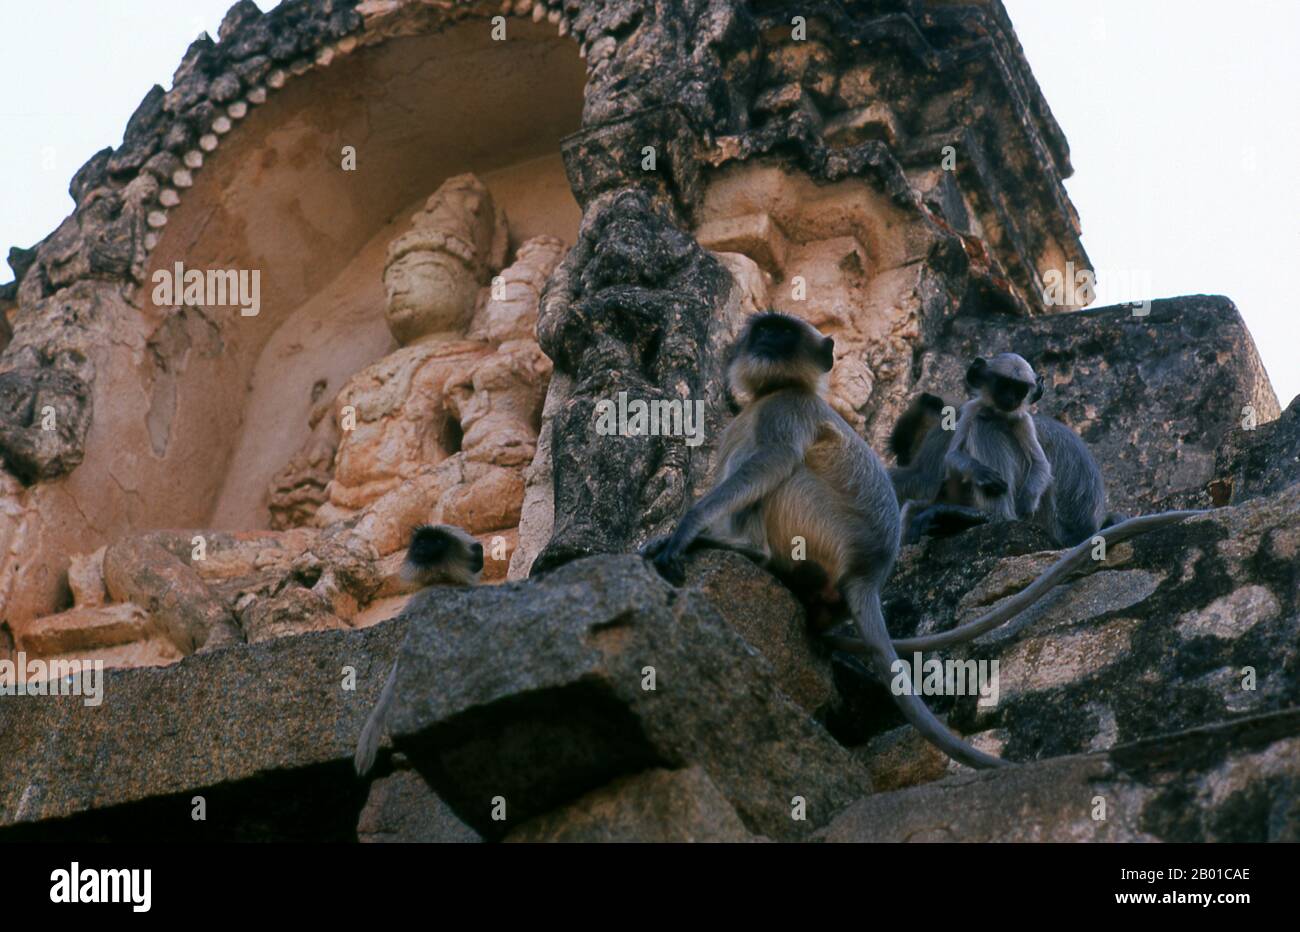 Graue Languren oder Hanuman-Languren sind die am weitesten verbreiteten Languren Südasiens. Der Virupaksha-Tempel (auch Pampapathi-Tempel genannt) ist Hampis wichtigstes Pilgerzentrum. Sie ist unter den umliegenden Ruinen völlig intakt und wird bis heute im Gottesdienst genutzt. Der Tempel ist Lord Shiva gewidmet, der hier als Virupaksha bekannt ist, als Einsitz der lokalen Göttin Pampa, die mit dem Fluss Tungabhadra in Verbindung gebracht wird. Hampi ist ein Dorf im nördlichen Karnataka-Staat. Sie liegt innerhalb der Ruinen von Vijayanagara, der ehemaligen Hauptstadt des Vijayanagara-Imperiums. Vor der Stadt Vijayanagara geht es weiter Stockfoto